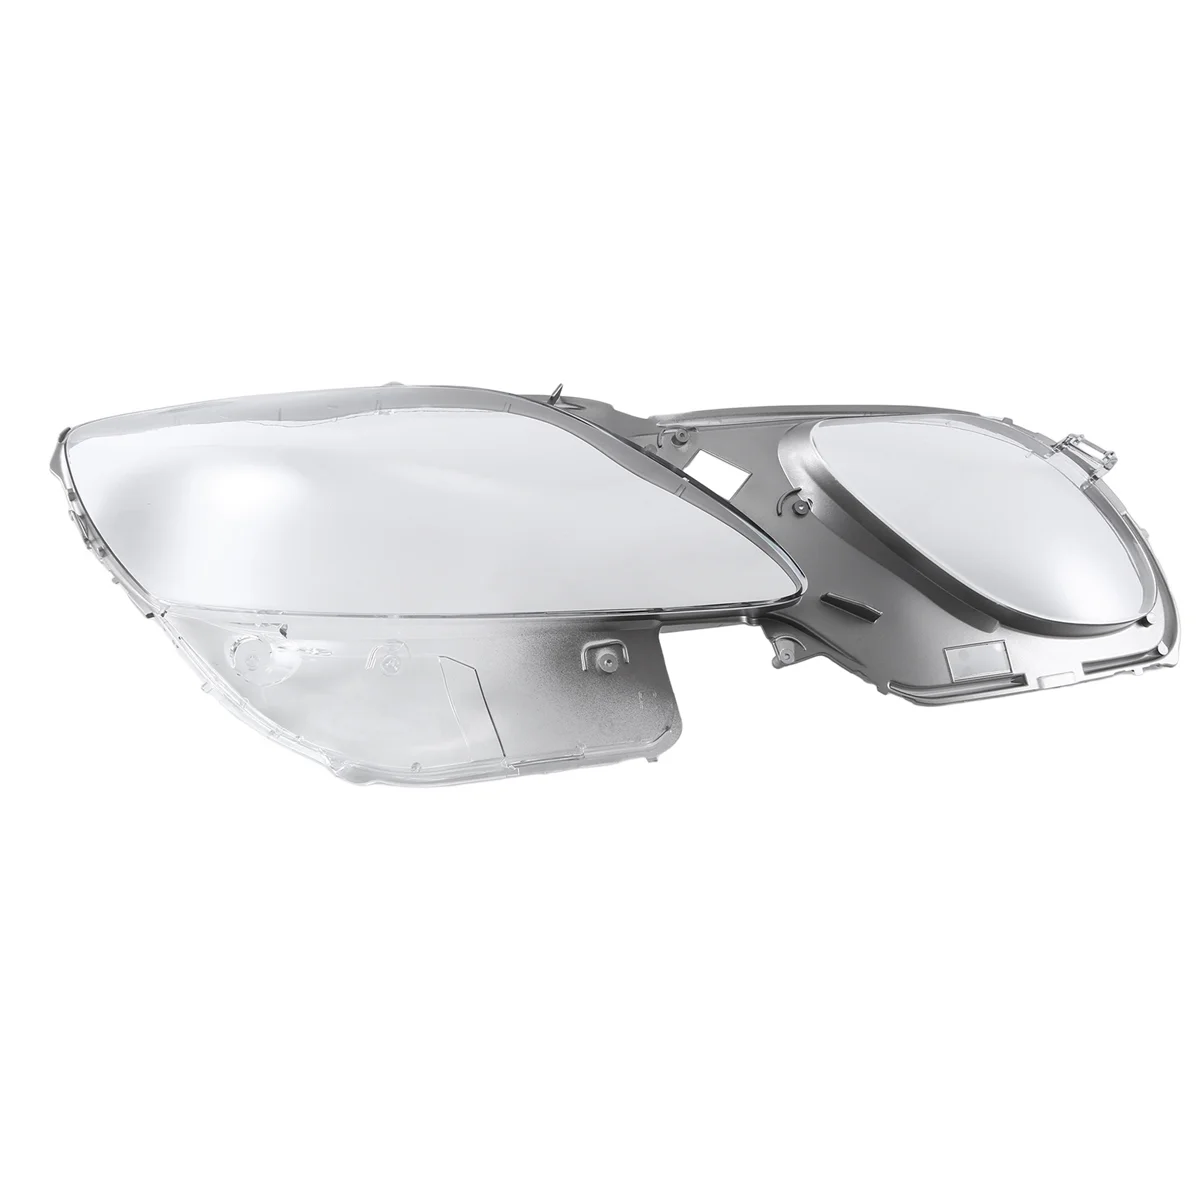 Прозрачная крышка объектива фары для Lexus GS300, GS430, GS450 06-11